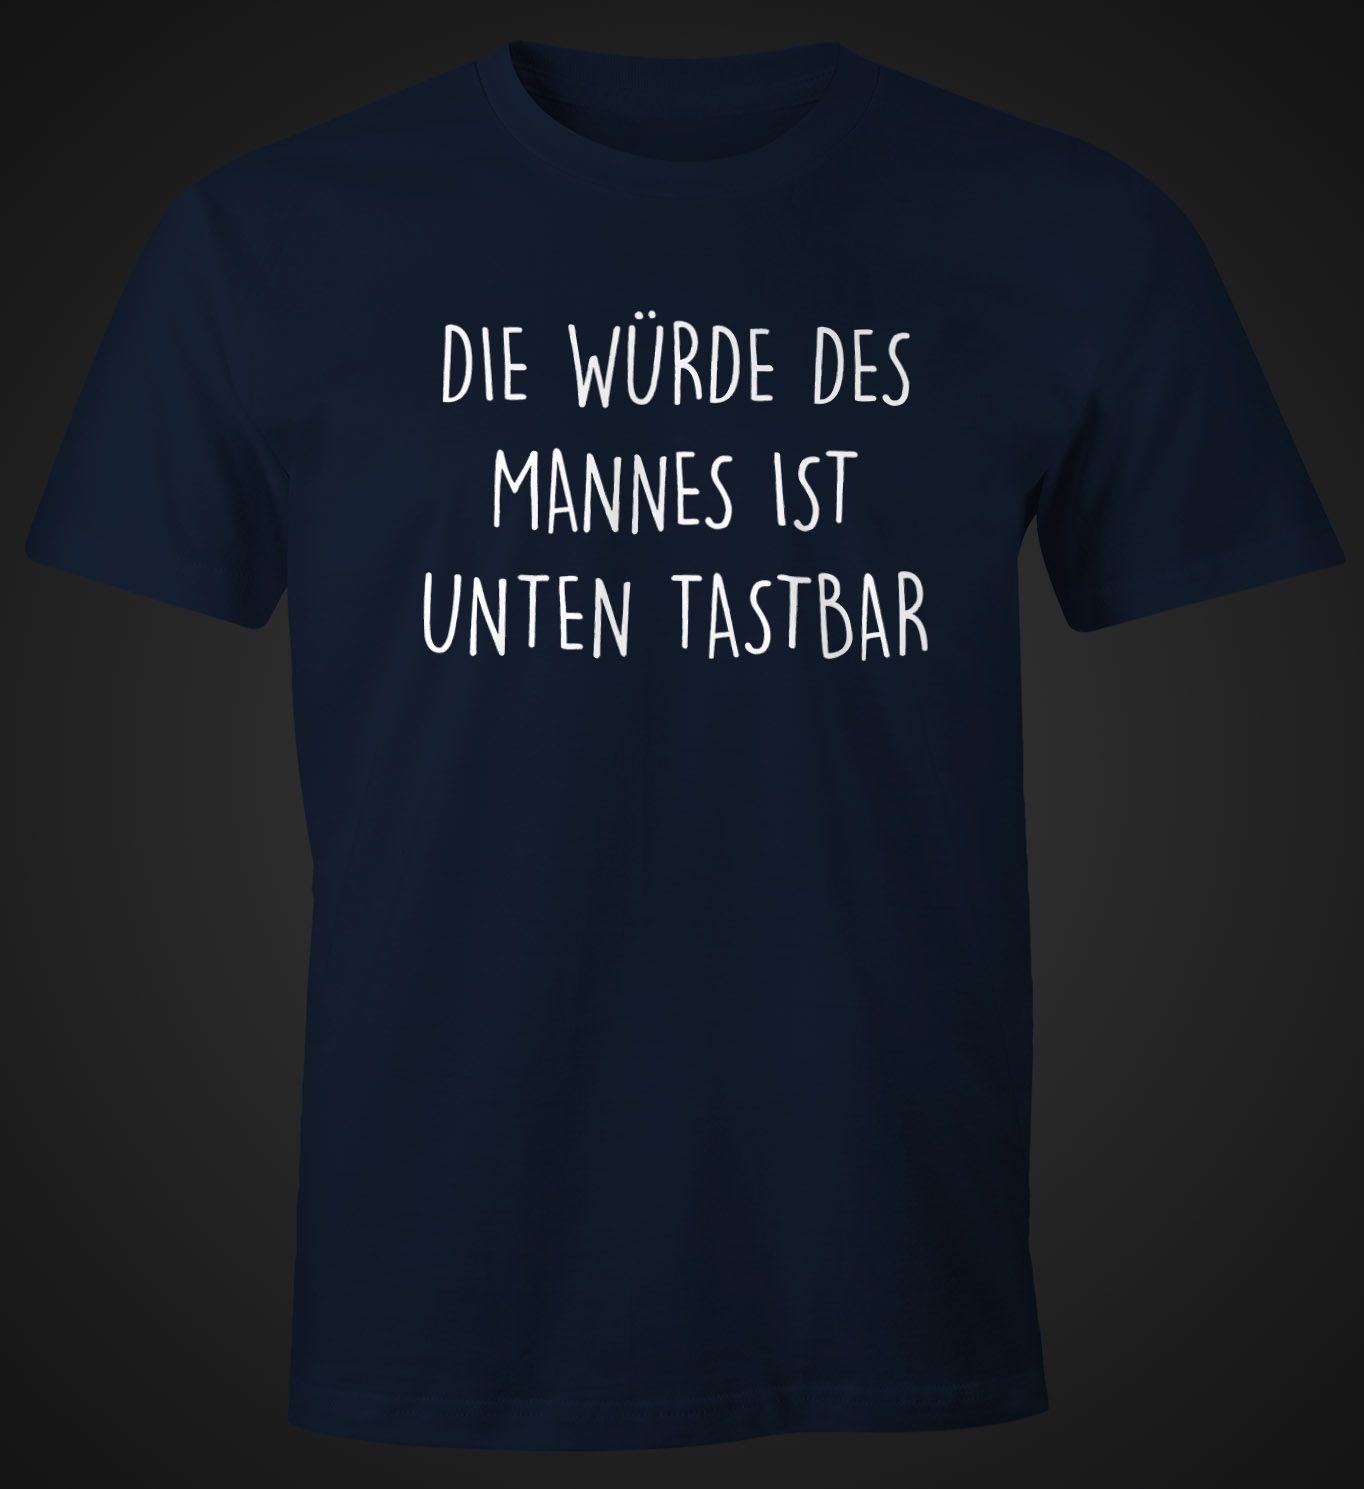 Die ist Print-Shirt Herren Lustiges tastbar Würde unten Spruch mit MoonWorks Print Fun-Shirt navy mit T-Shirt Mannes des Moonworks®